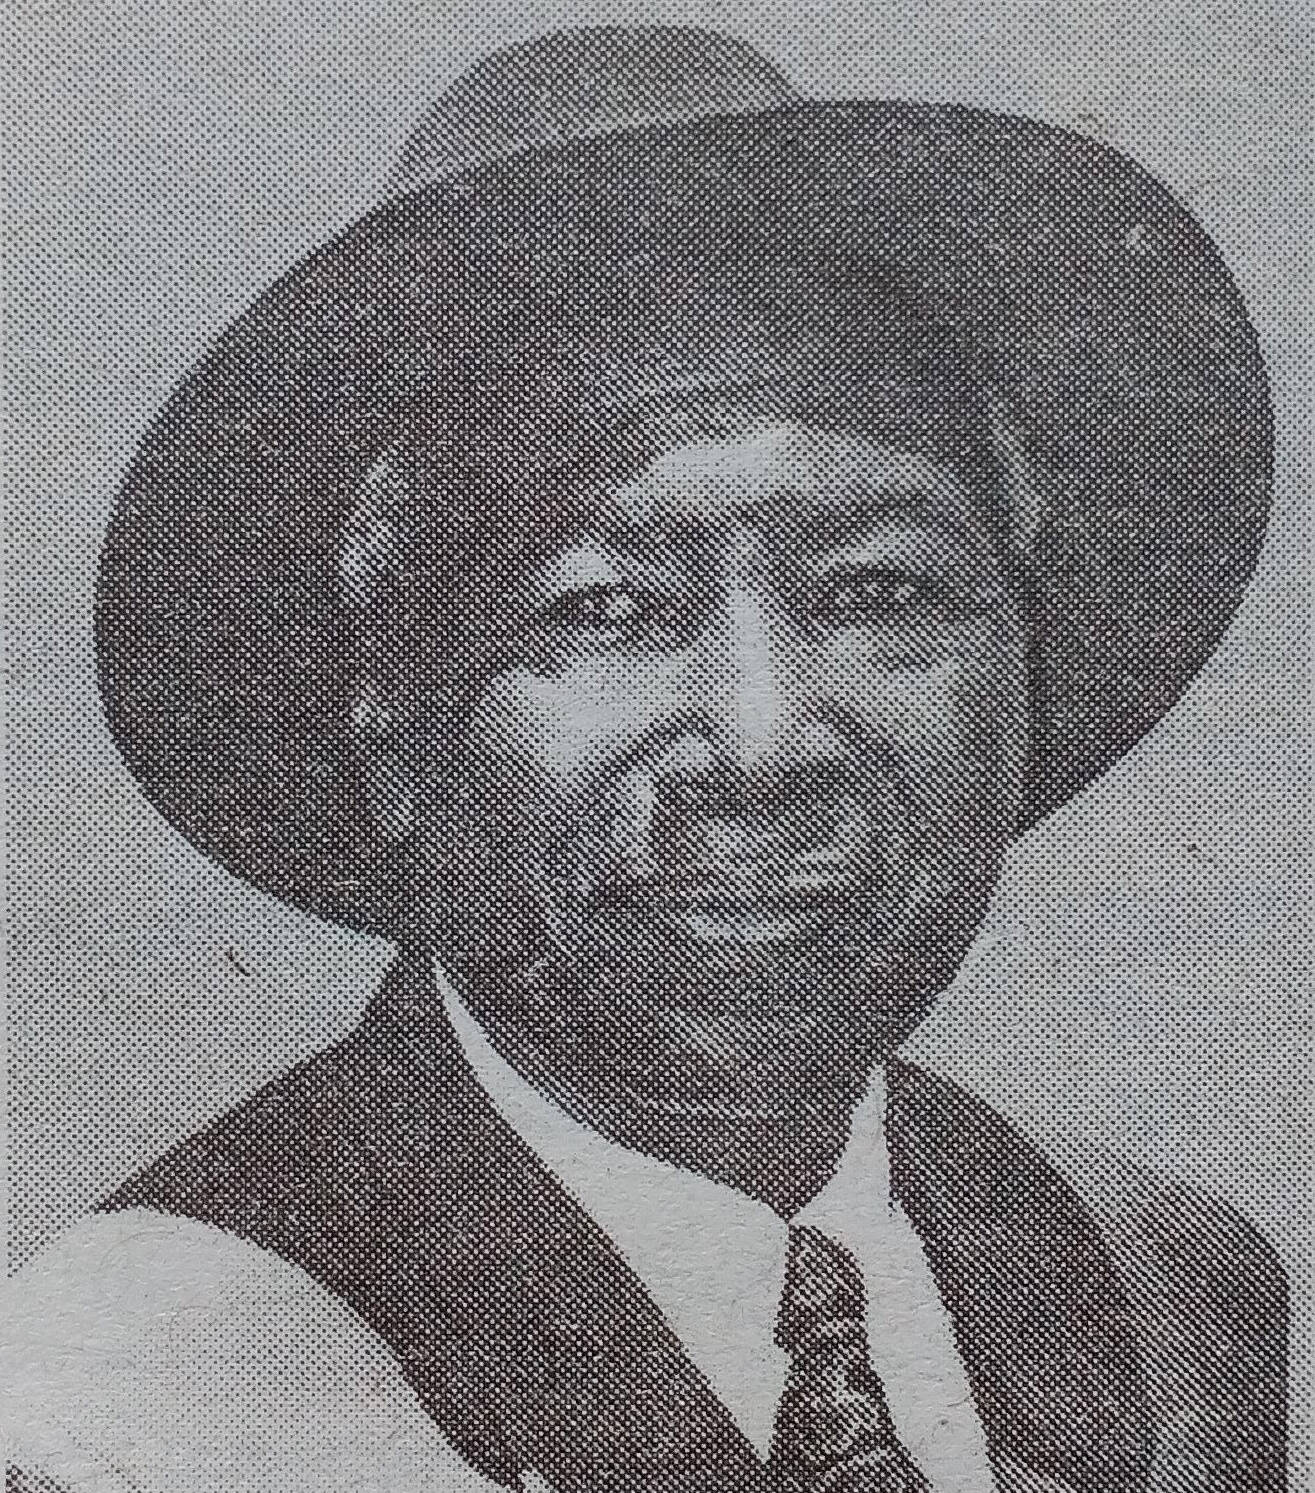 Obituary Image of James Benedict Munyoki Musyoka Sunrise: 1937 - Sunset:1/4/2017